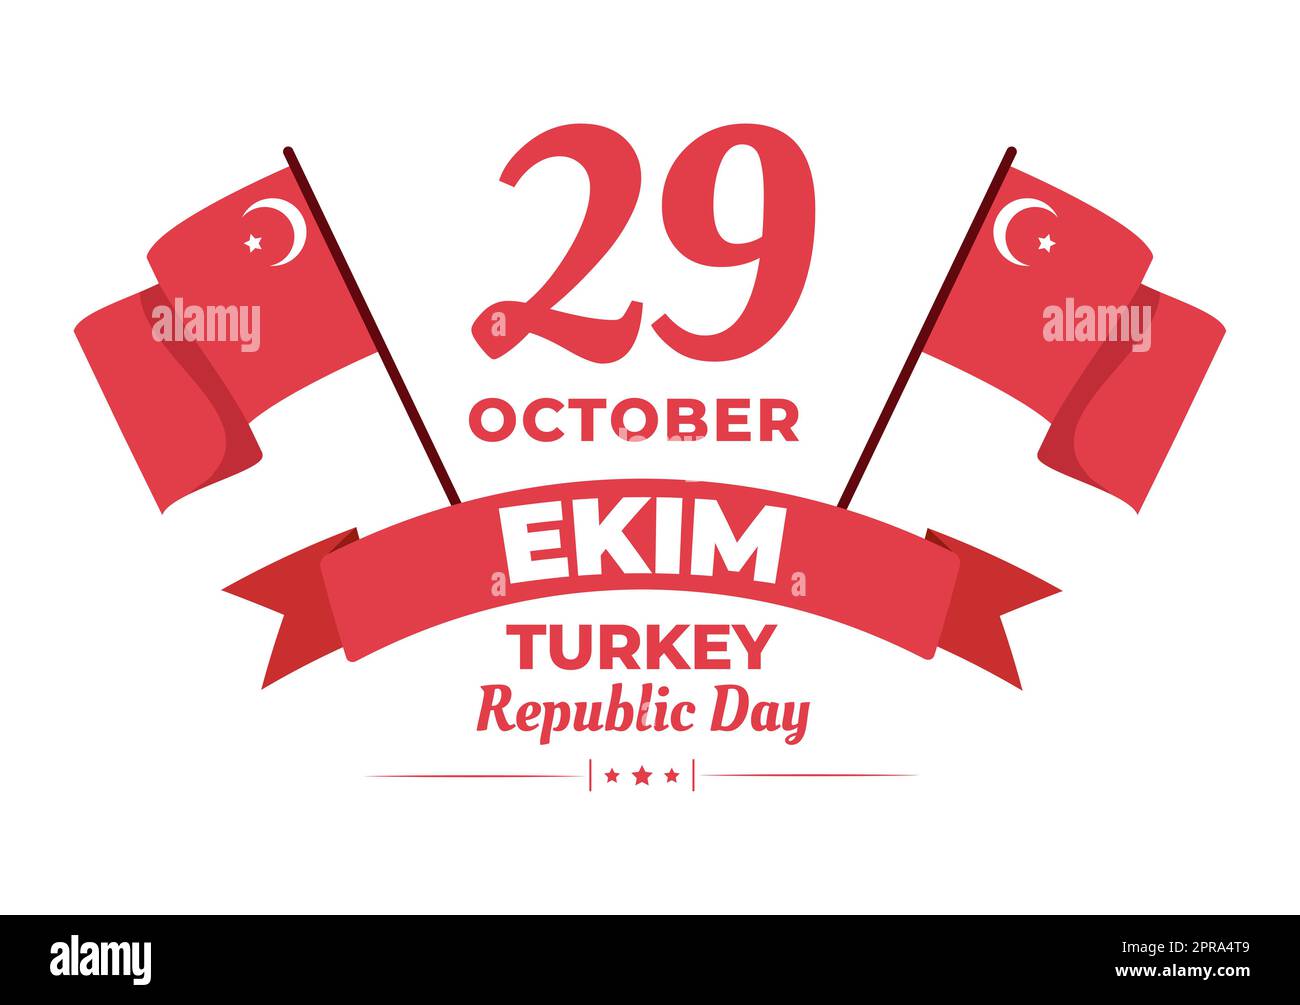 Jour de la République Turquie ou 29 Ekim Cumhuriyet Bayrami Kutlu Olsun dessin à la main dessin à l'écran plat de dessin animé avec drapeau turc et Happy Holiday Design Banque D'Images